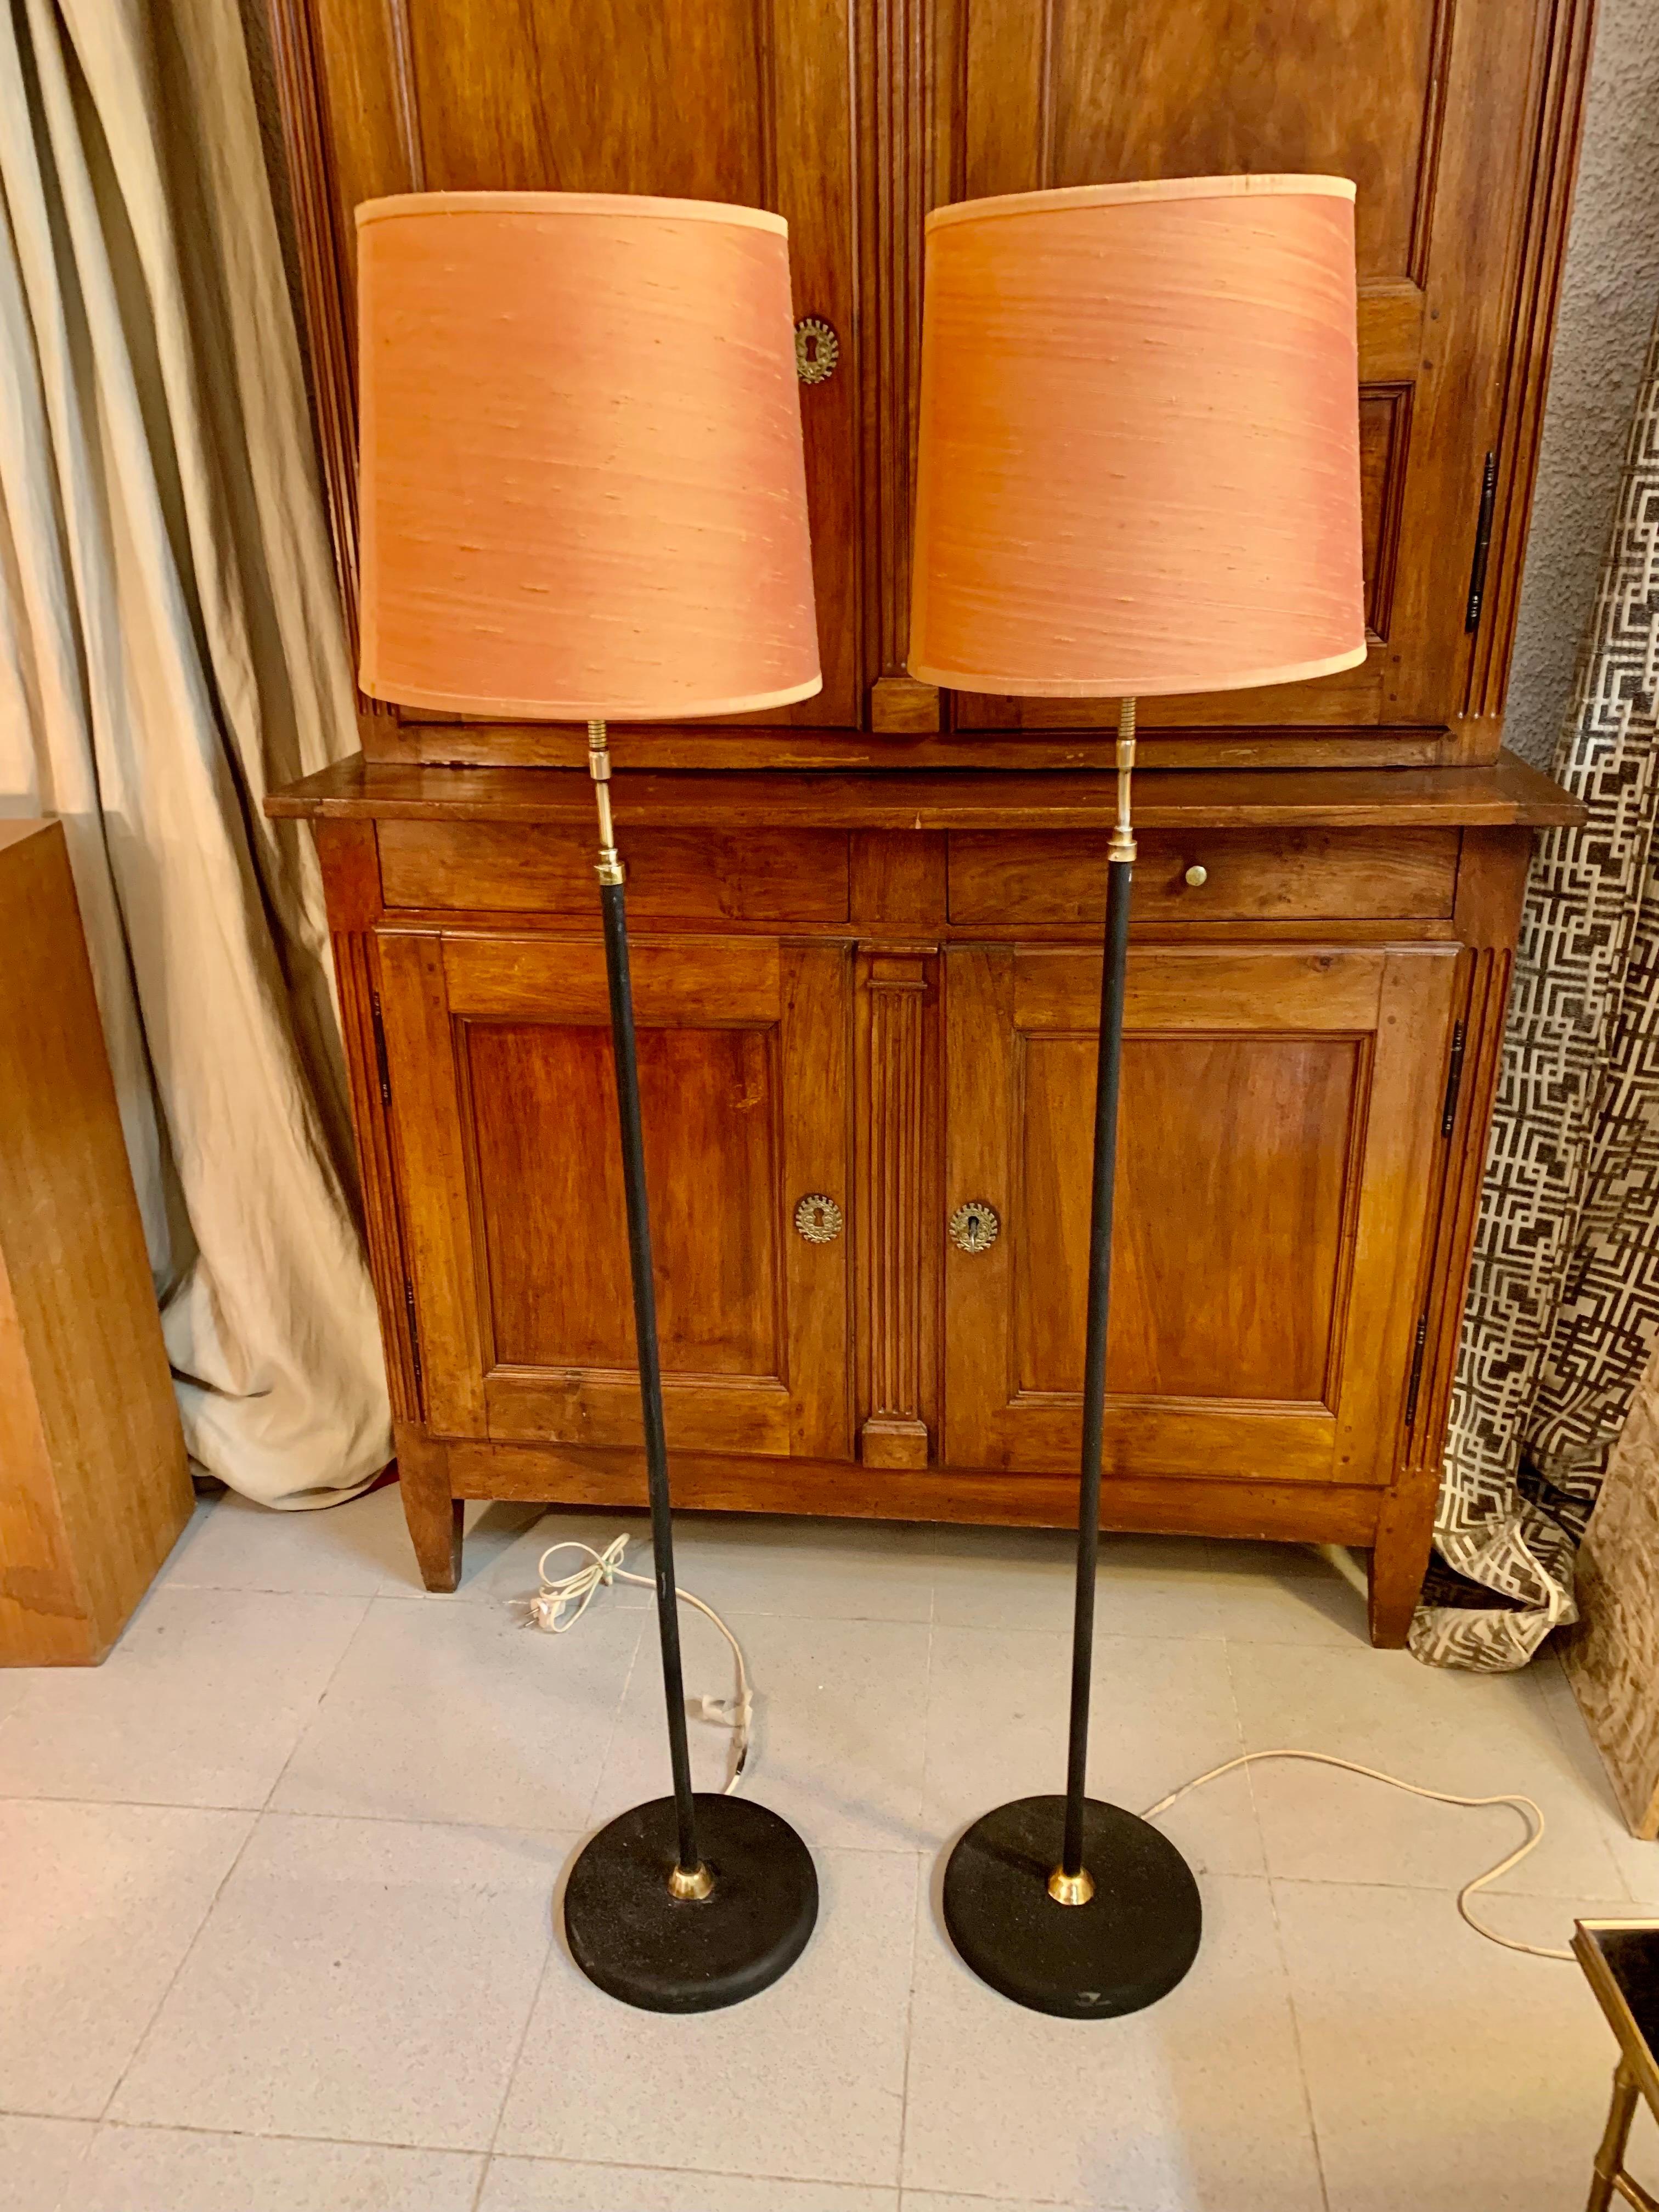 Cet ensemble de deux lampadaires du milieu du siècle a été fabriqué en Suède dans les années 1960 par Stilarmatur. Les lampes se composent d'un pied en métal laqué noir avec un petit cône en laiton, d'où part la colonne laquée noire. Les abat-jour